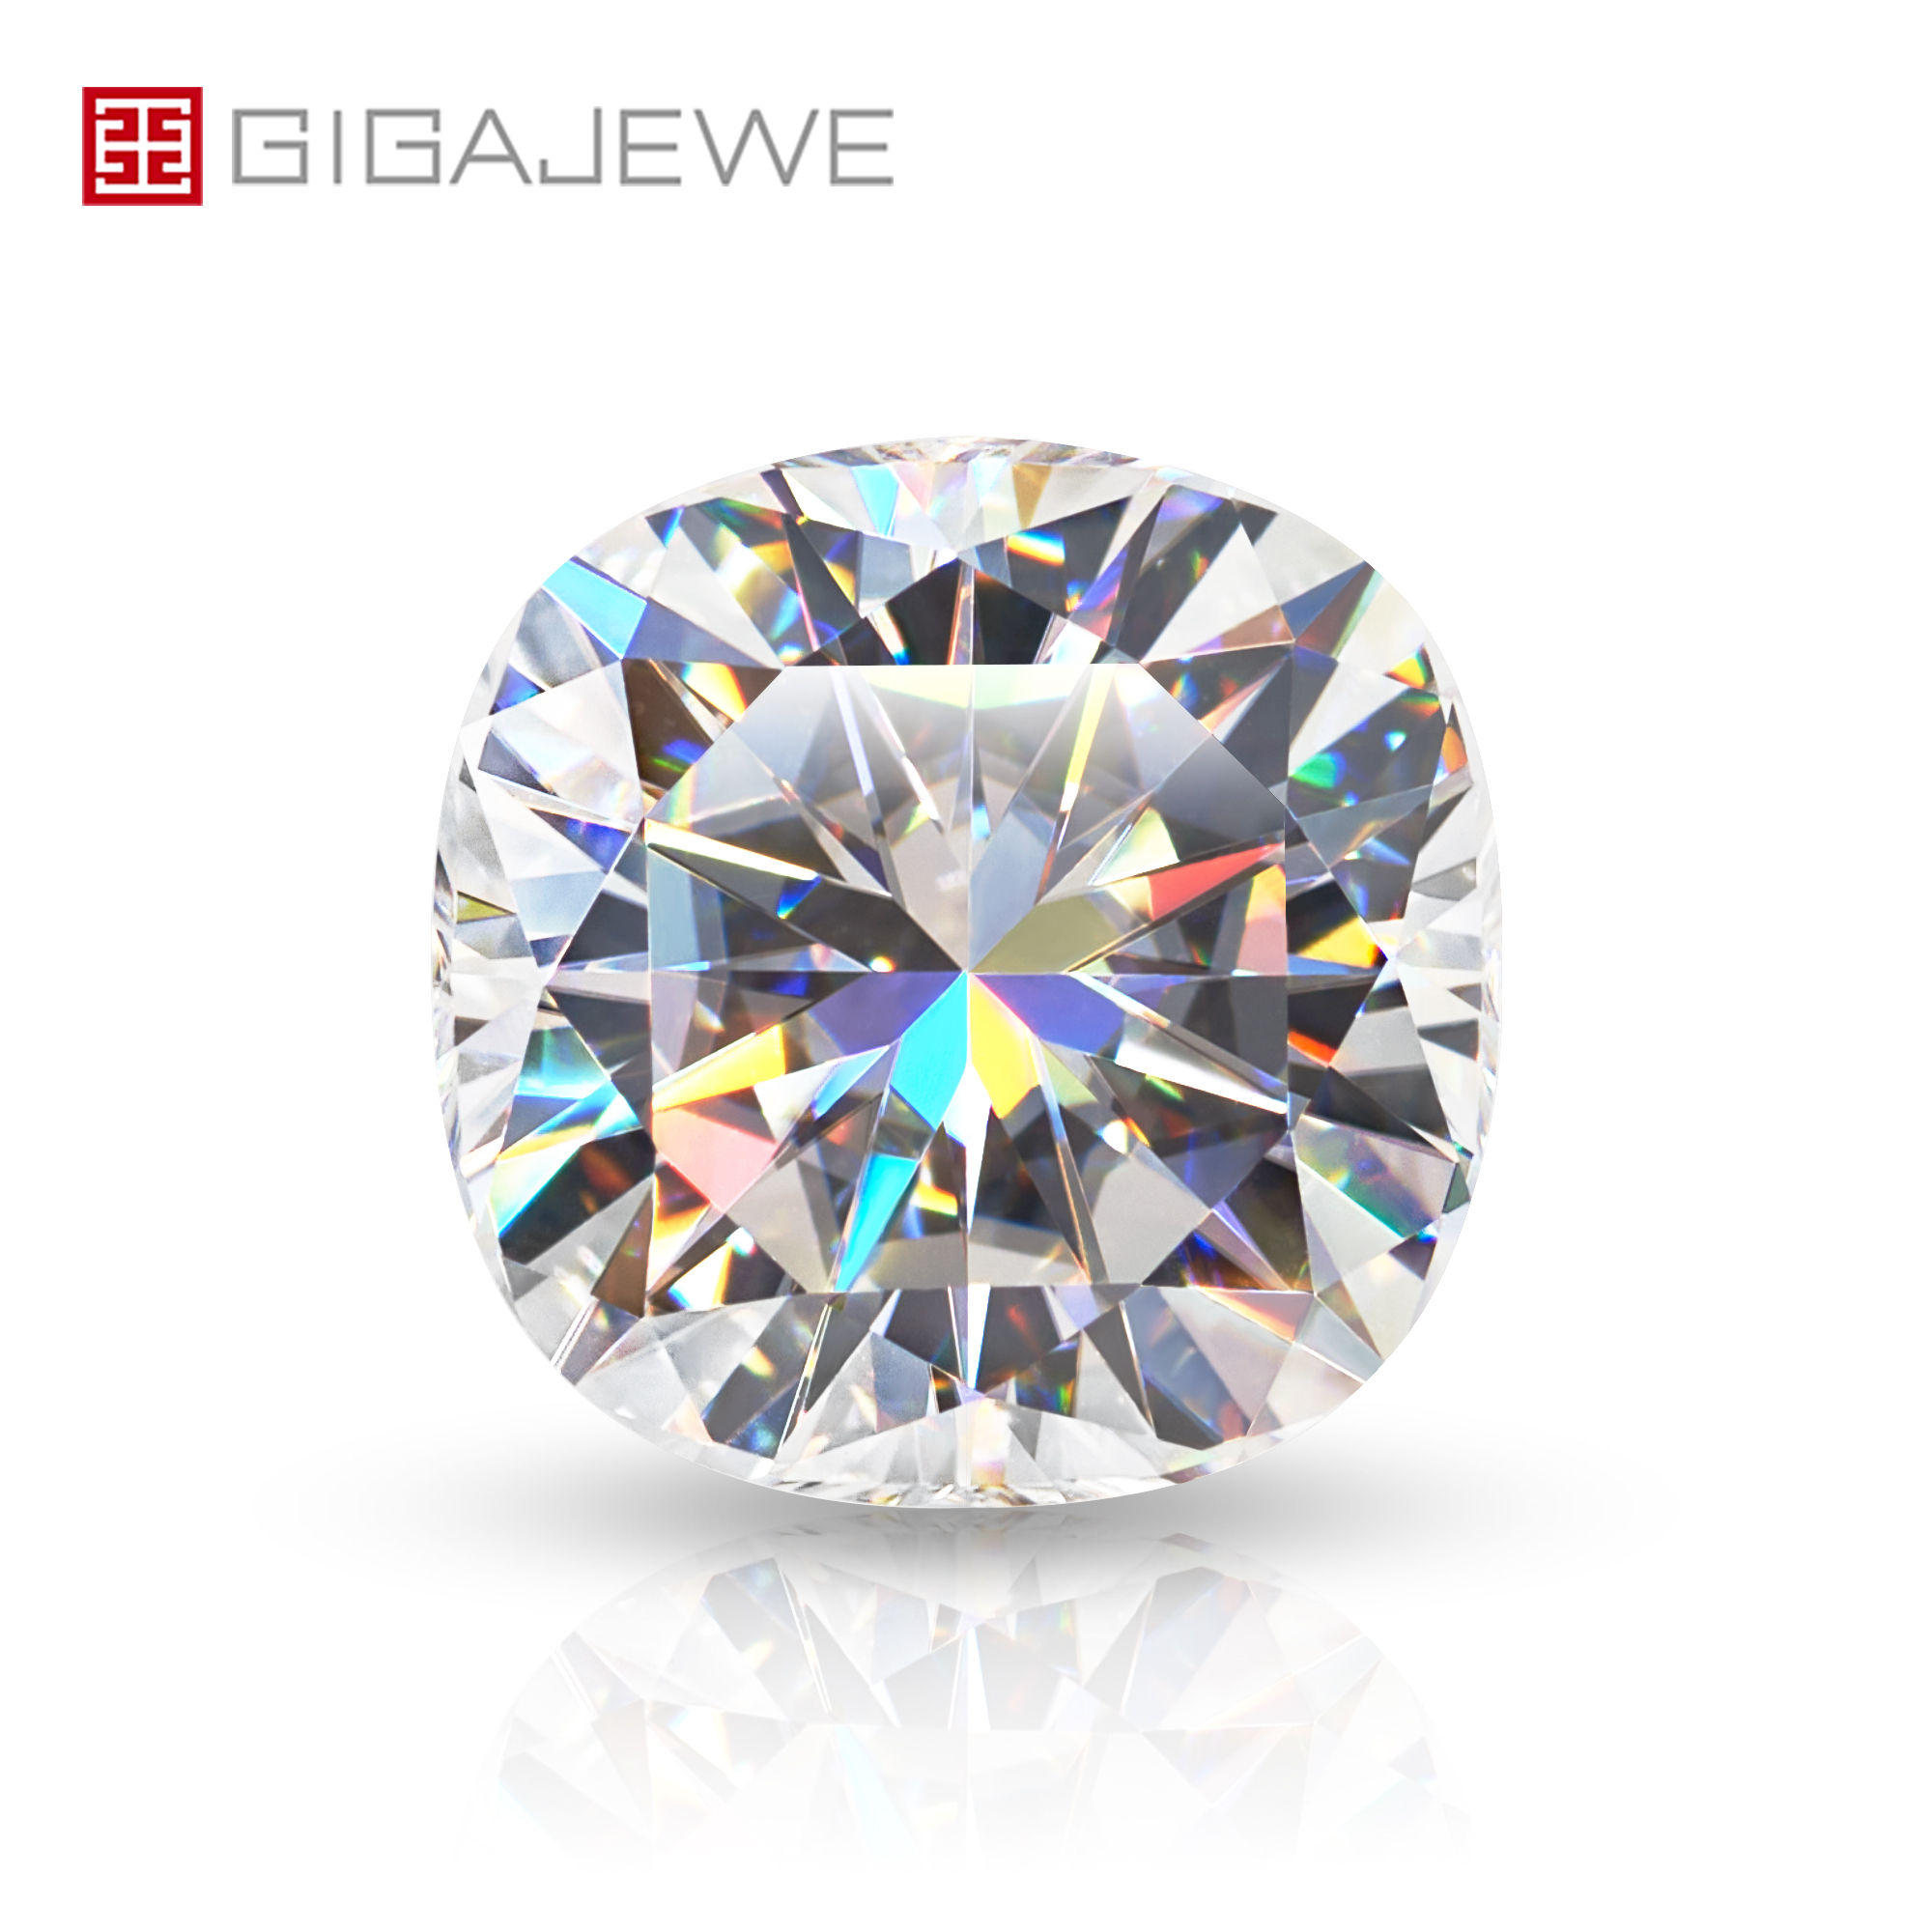 GIGAJEWE 手切垫 白色 TOP D VVS1 莫桑石 优质宝石 裸钻 测试通过 用于珠宝制作的宝石